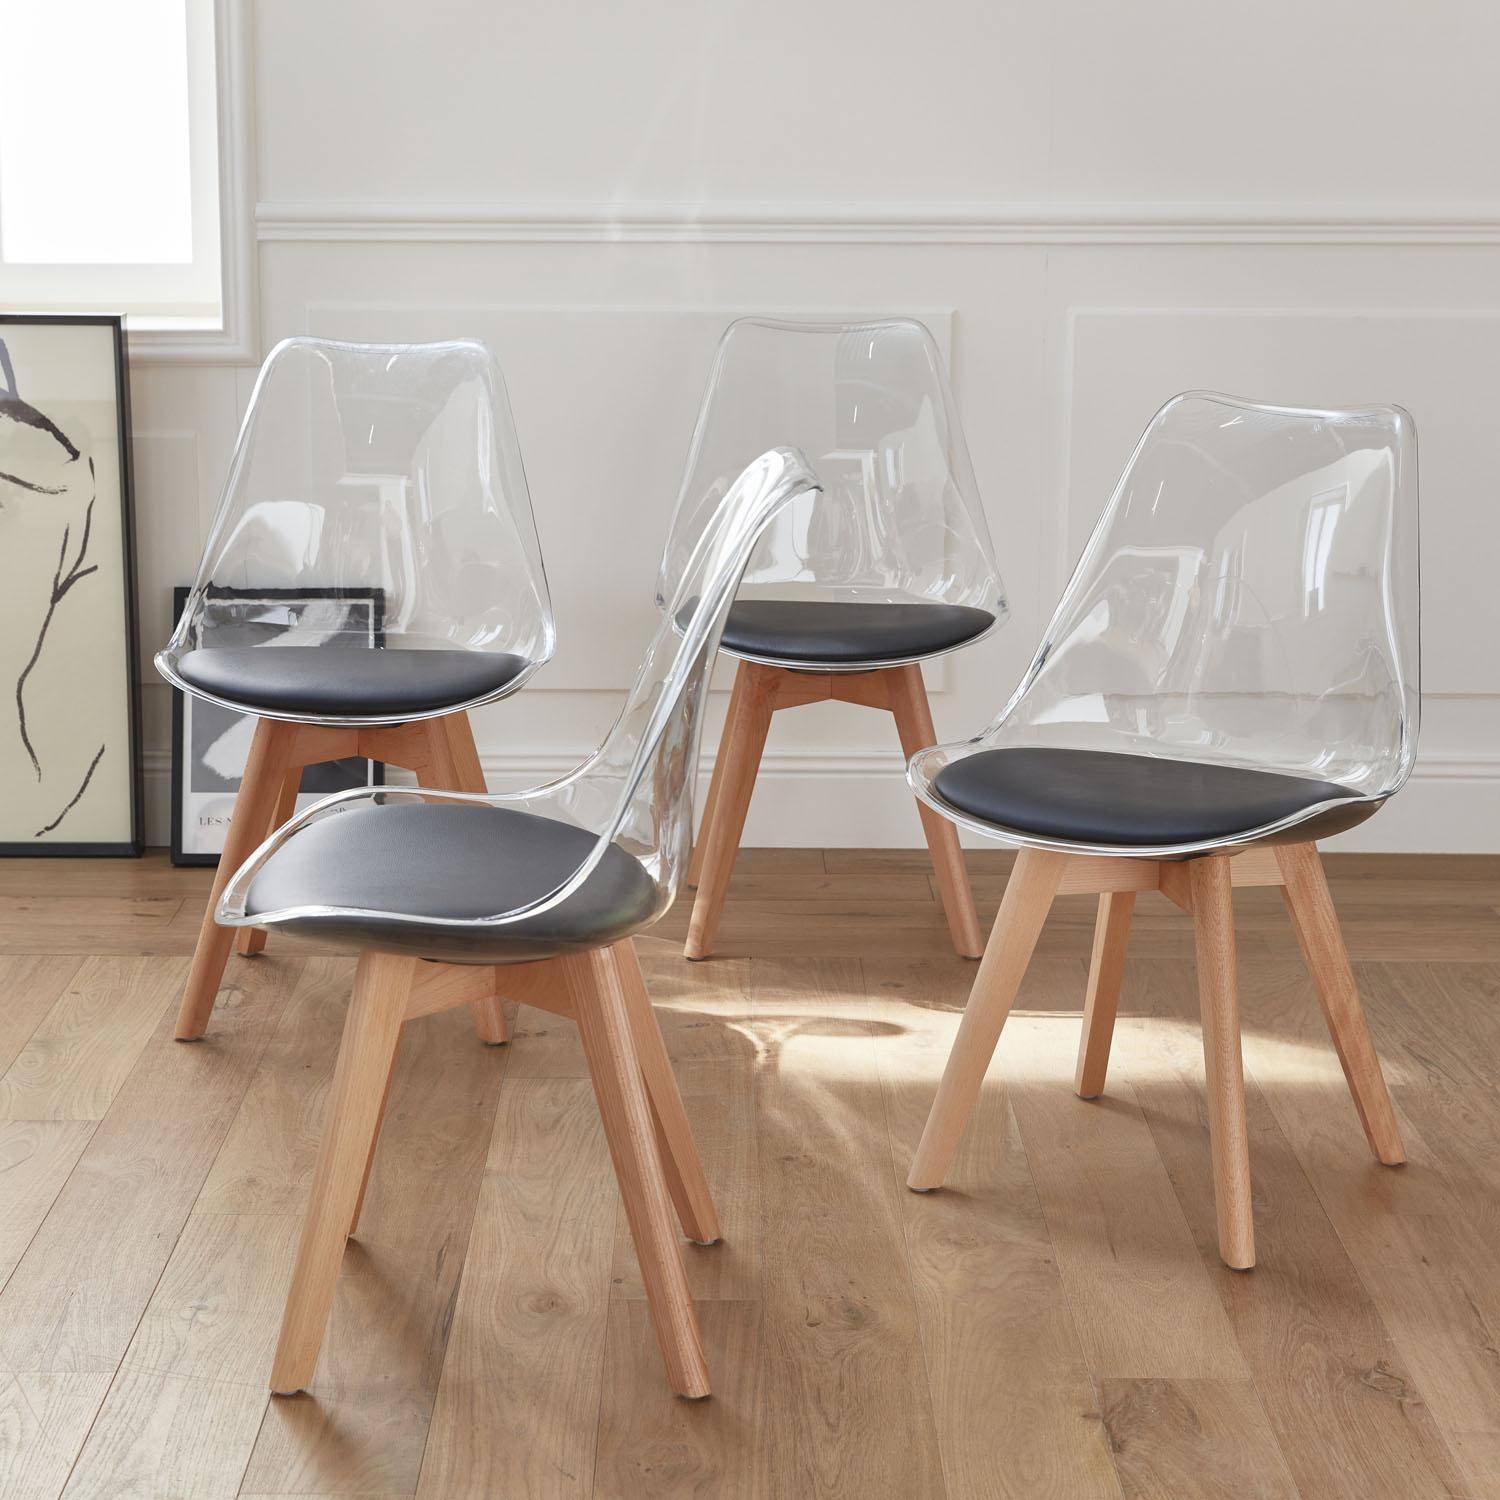 4er Set Stühle im skandinavischen Stil - Lagertha - Holzbeine, Ein Sitz, schwarzes Kissen, transparente Sitzschale Photo2